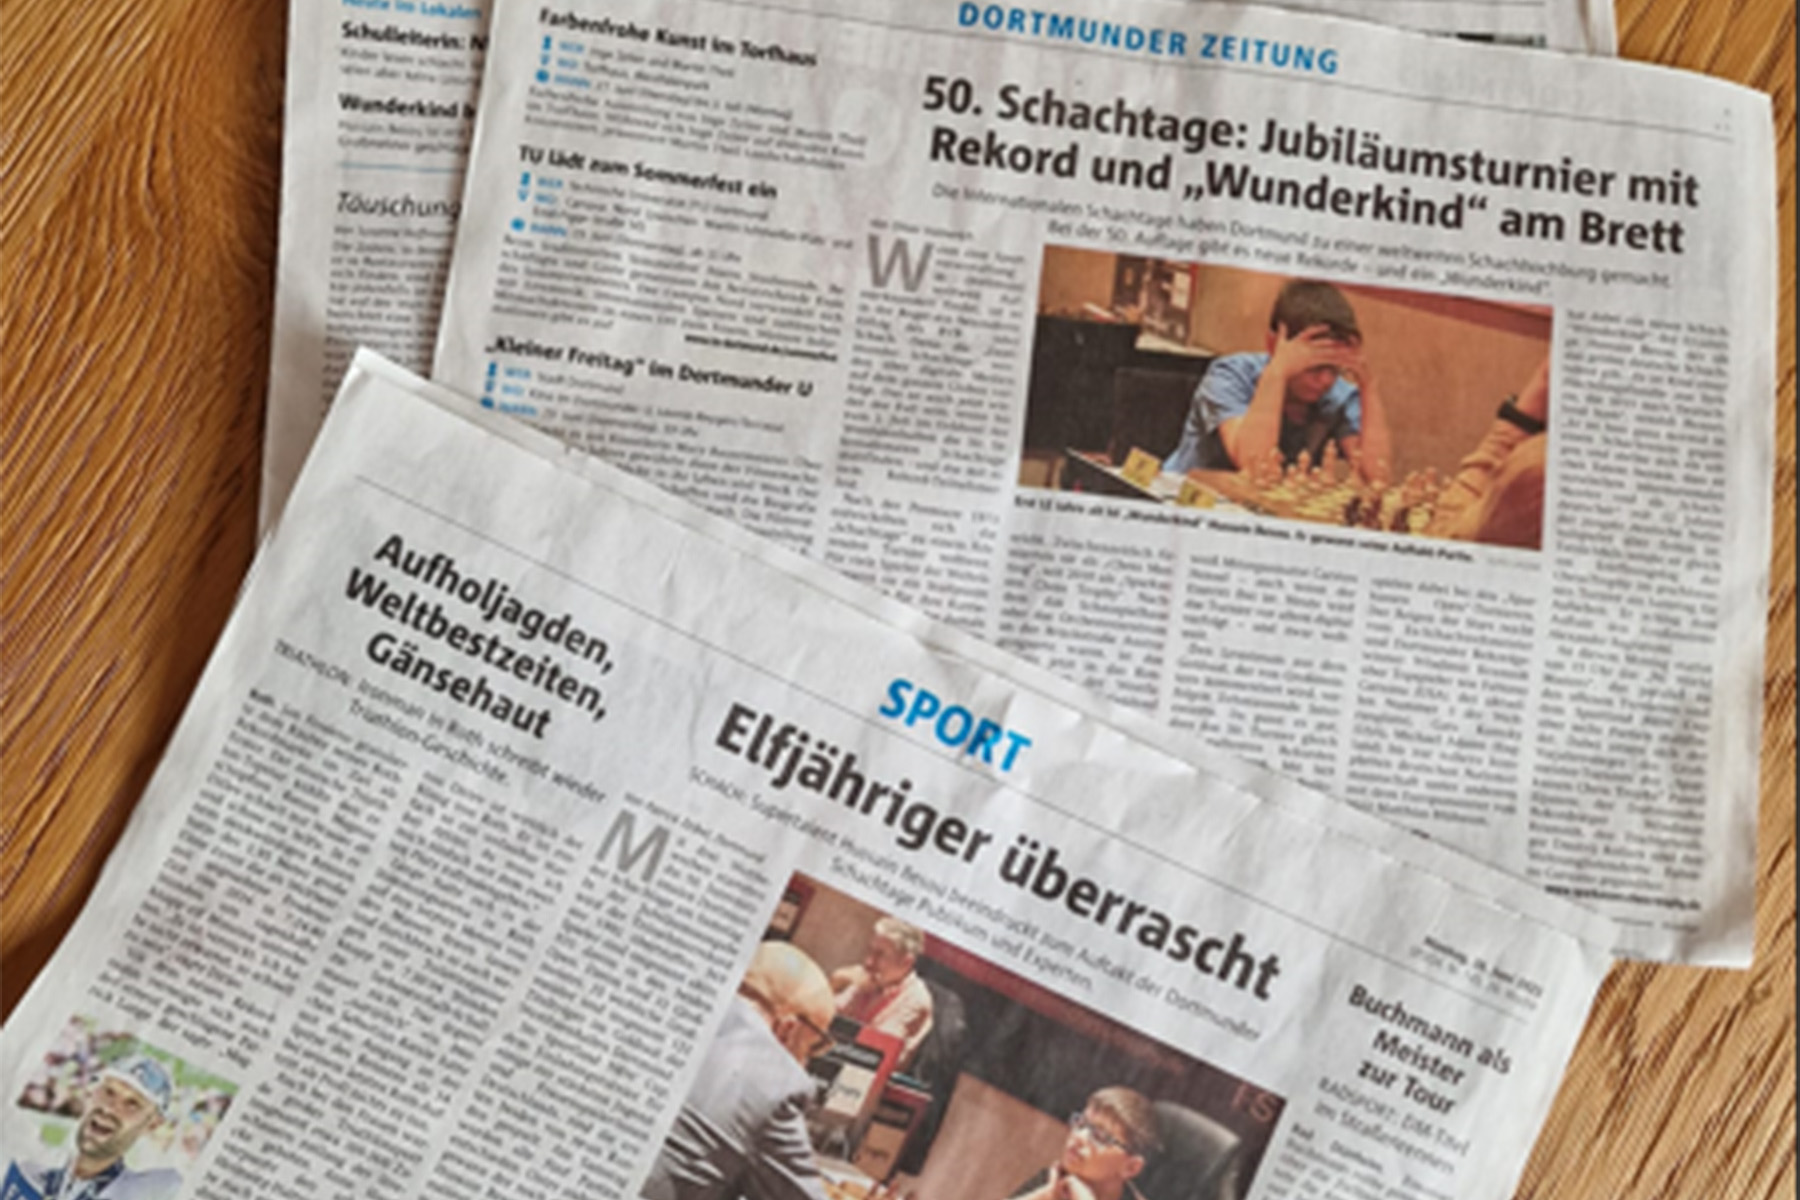 Internationale Dortmunder Schachtage in der Presse